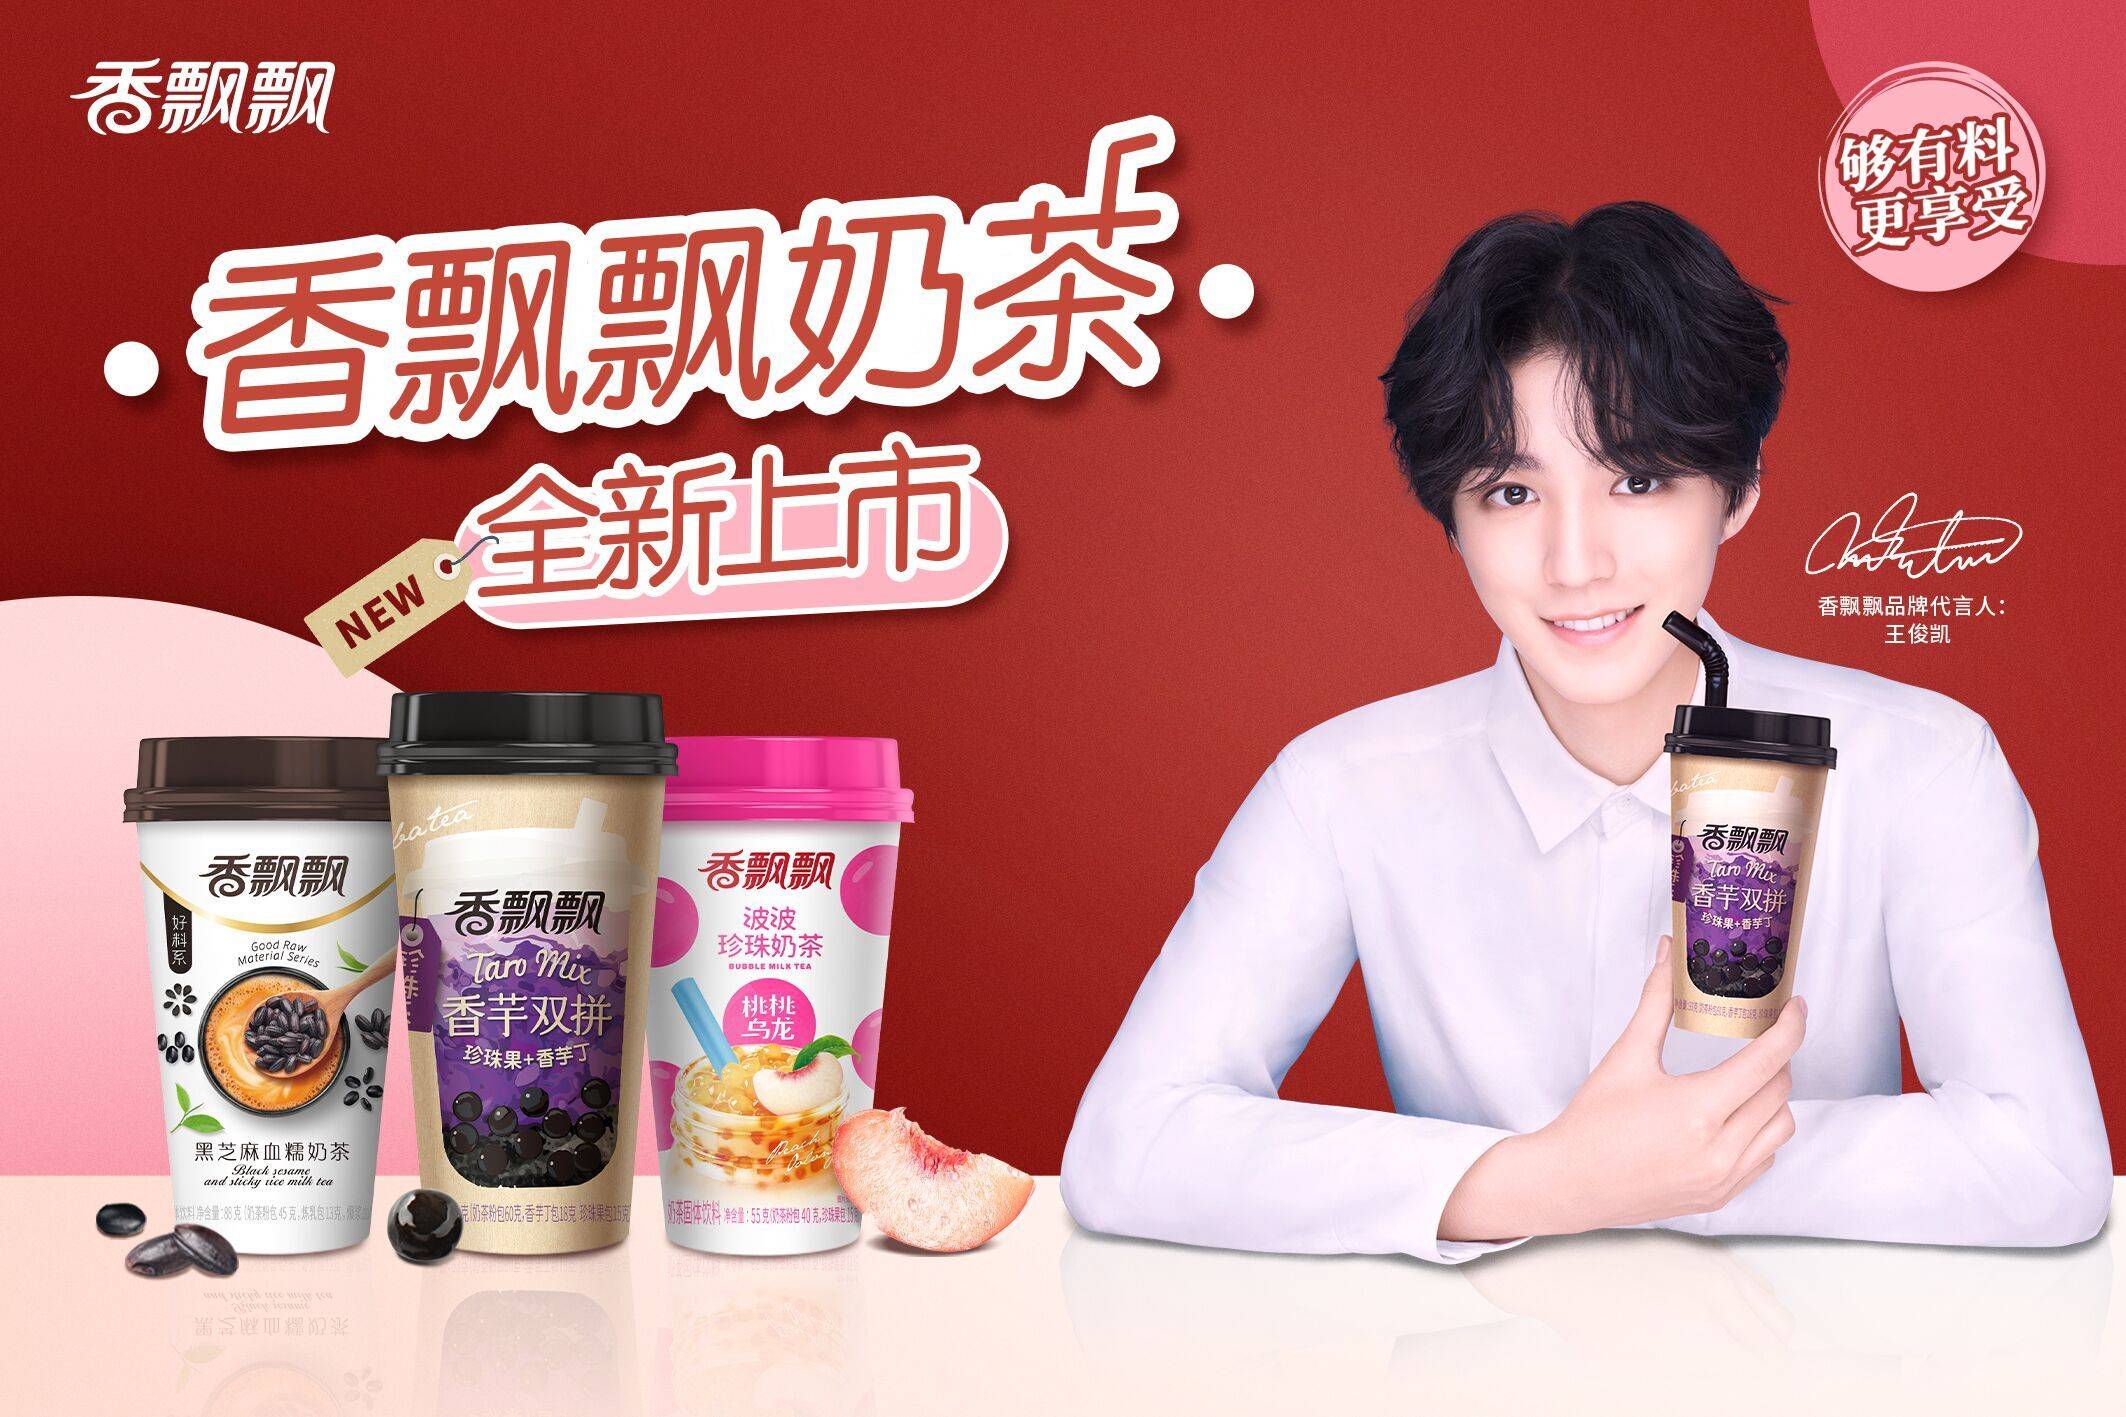 香飘飘 奶茶(11.16) | XPP Milk Tea 80g - 麦香味 | Oats - HappyGo Asian Market